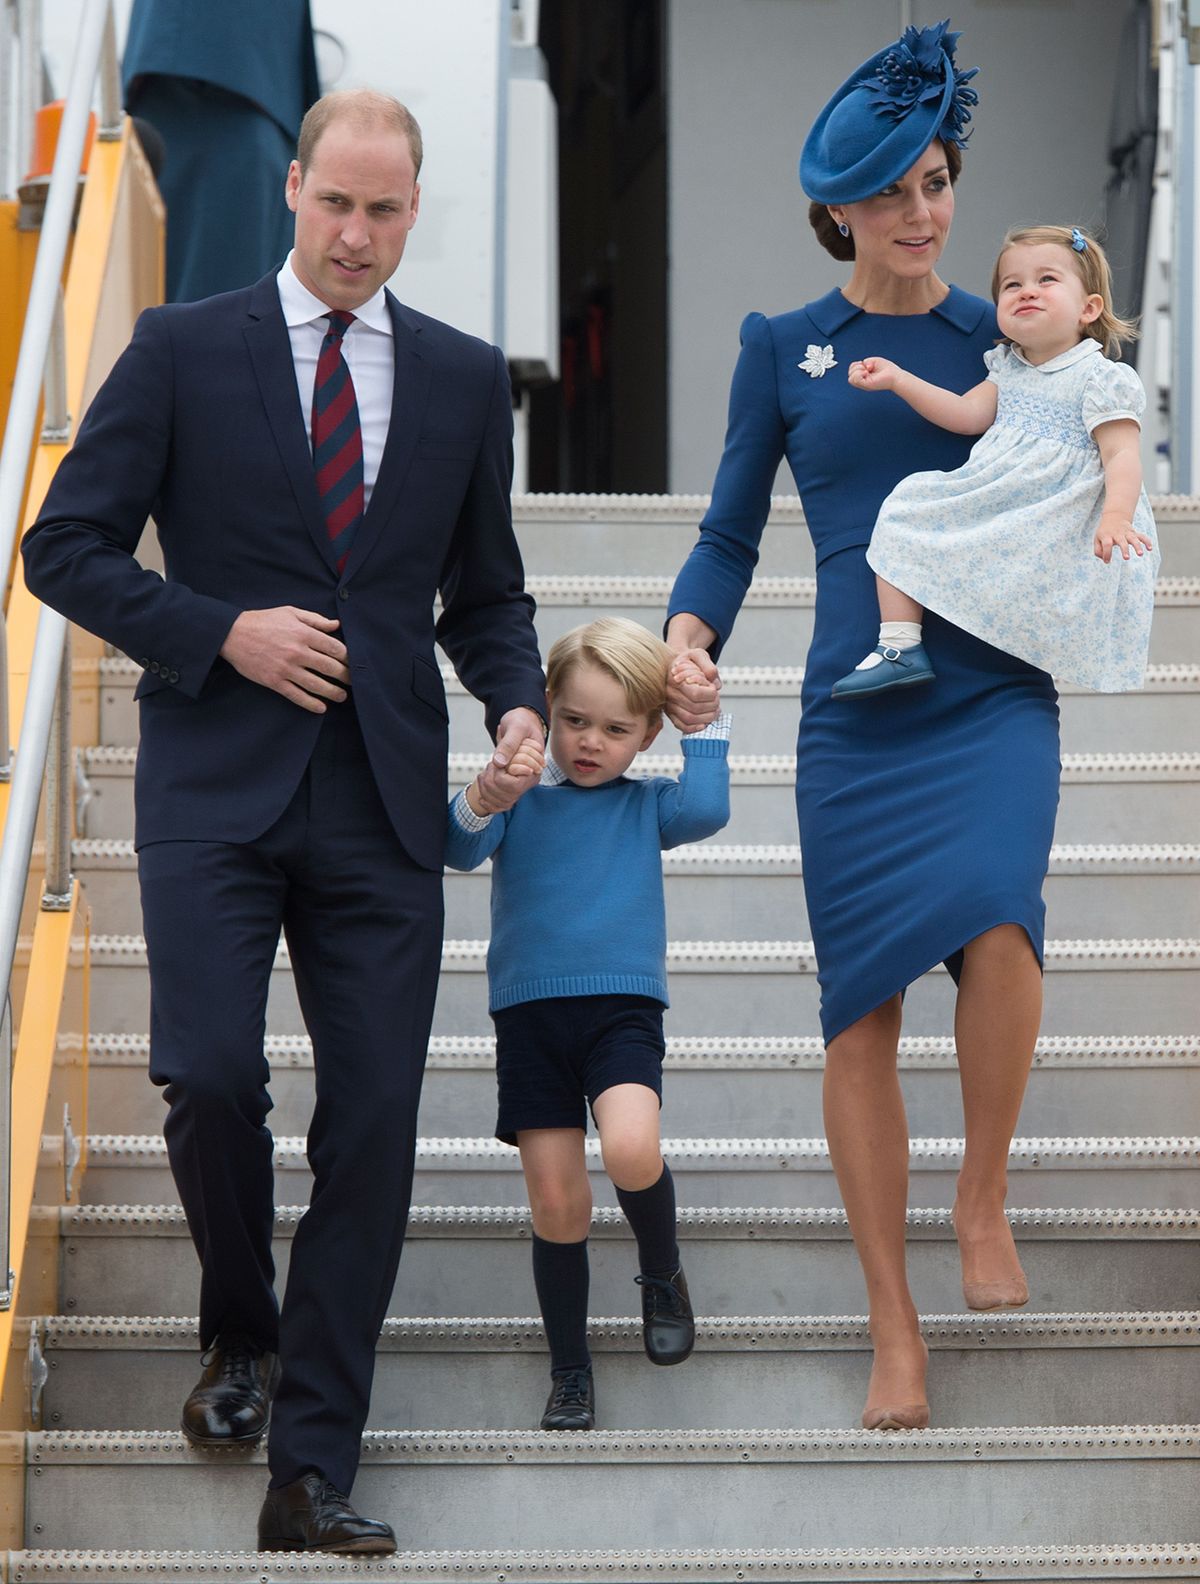 Kembridžas hercogi ar bērniem - princi Džordžu un princesi Šarloti ierodas jūras helikopteru eskadras bāzē Viktorijā, Britu Kolumbijā. Ģimene ir apburoši saskaņota - visi tērpušies zilos toņos. 